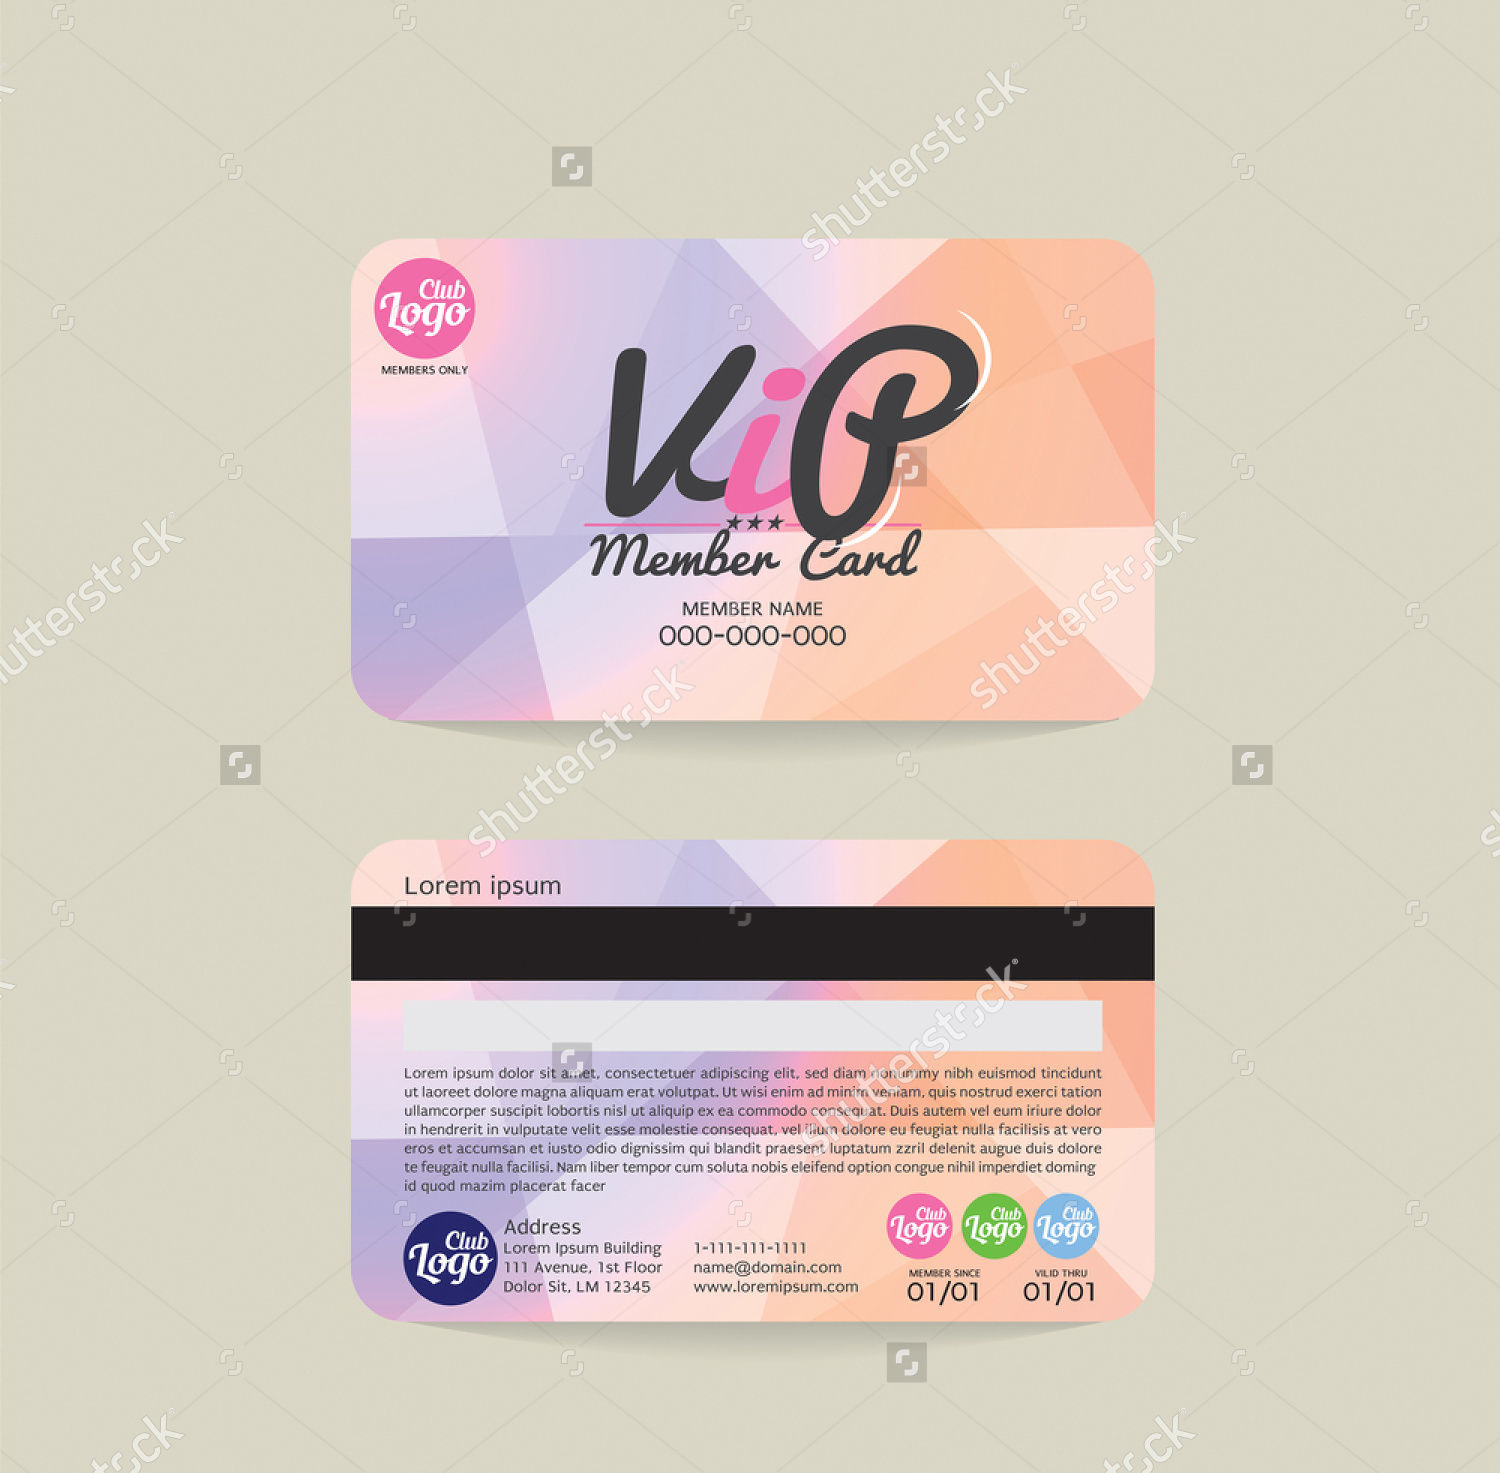 Download 15+ Membership Card Designs | Design Trends - Premium PSD ...